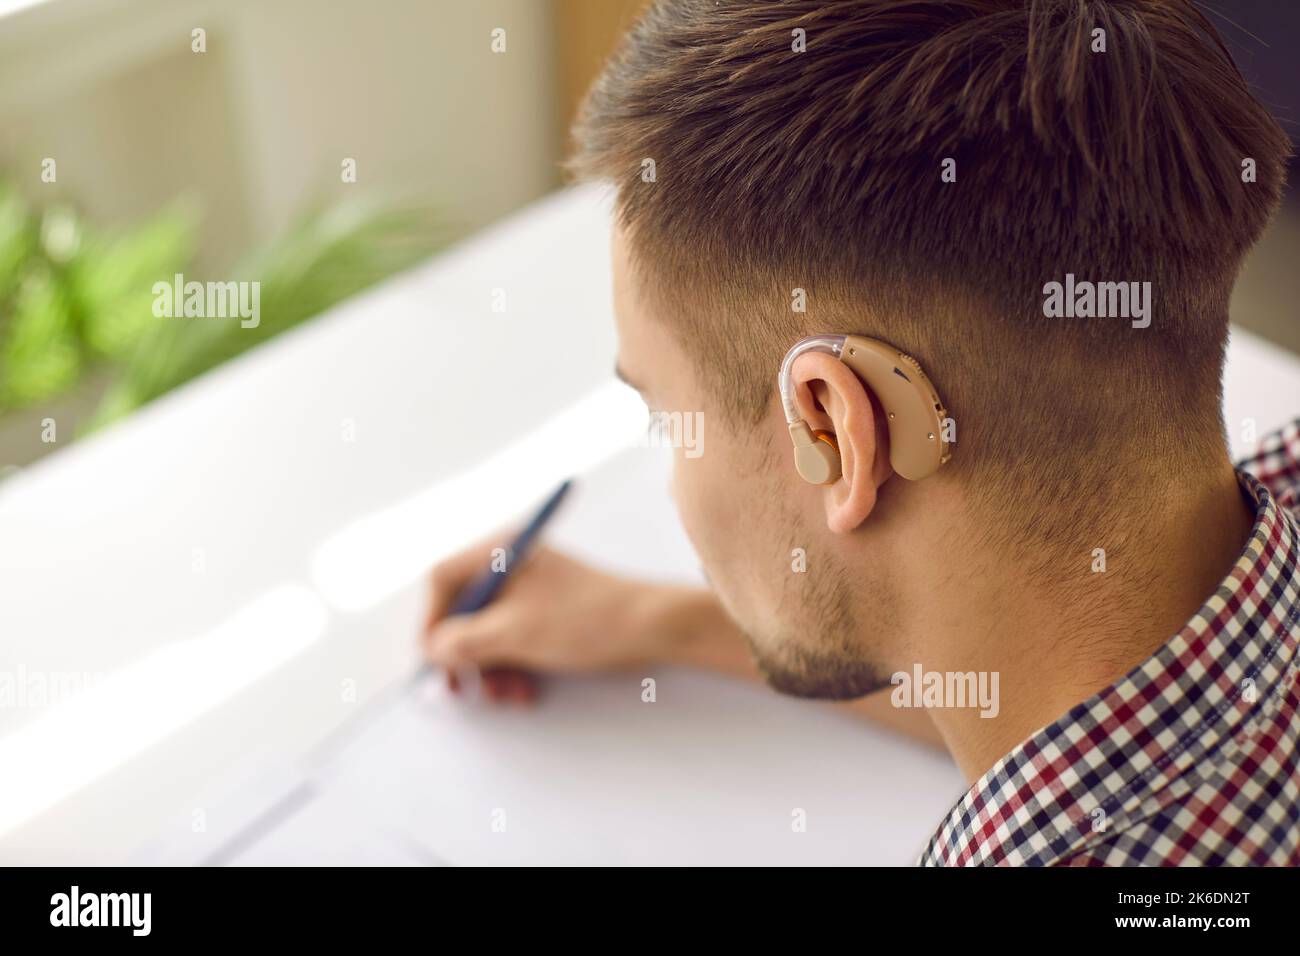 Hörgeschädigte Studenten, die ein modernes Hörgerät tragen, sitzen am Schreibtisch und schreiben Stockfoto